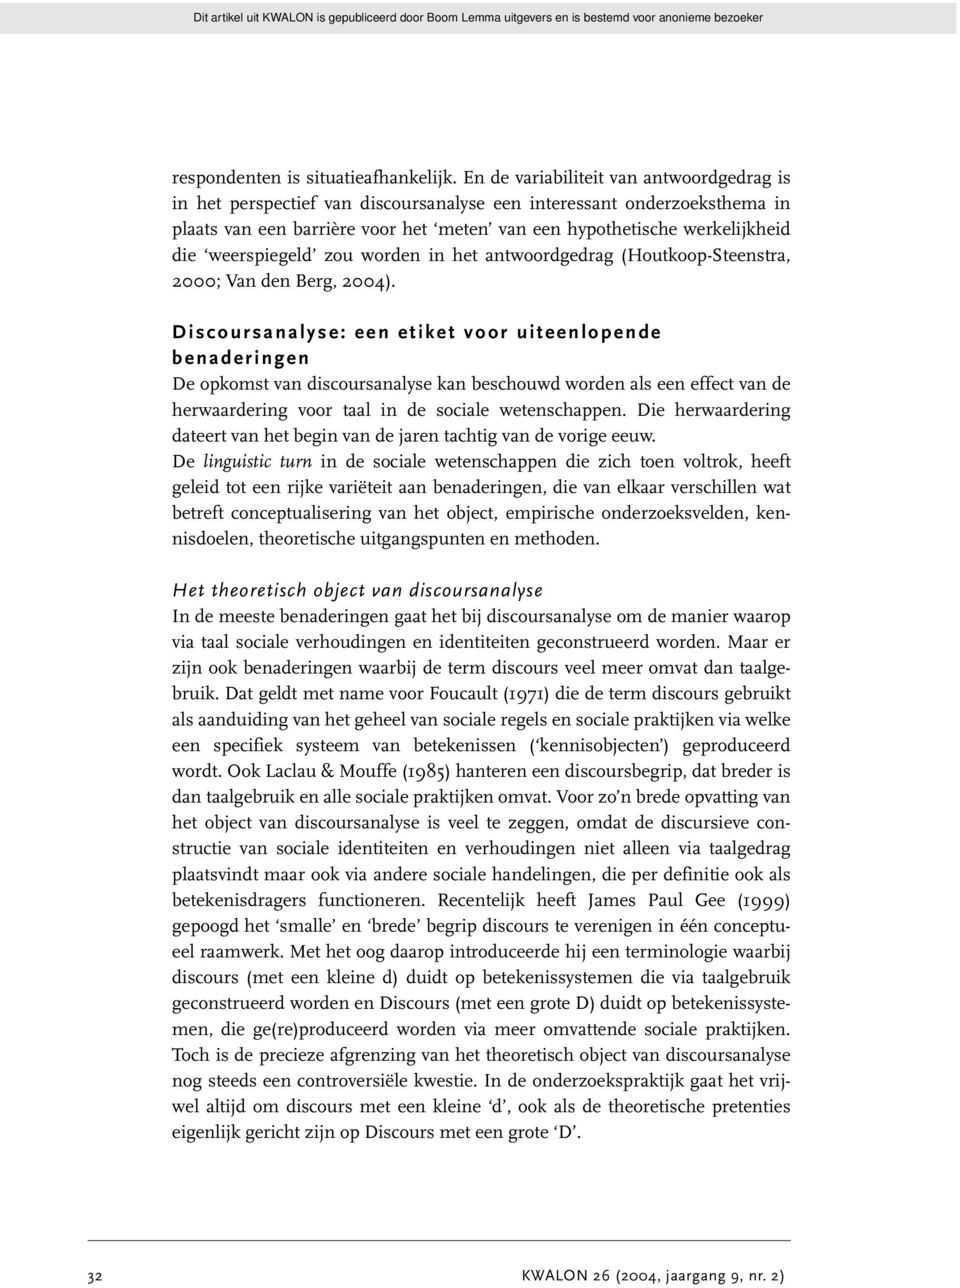 weerspiegeld zou worden in het antwoordgedrag (Houtkoop-Steenstra, 2000; Van den Berg, 2004).